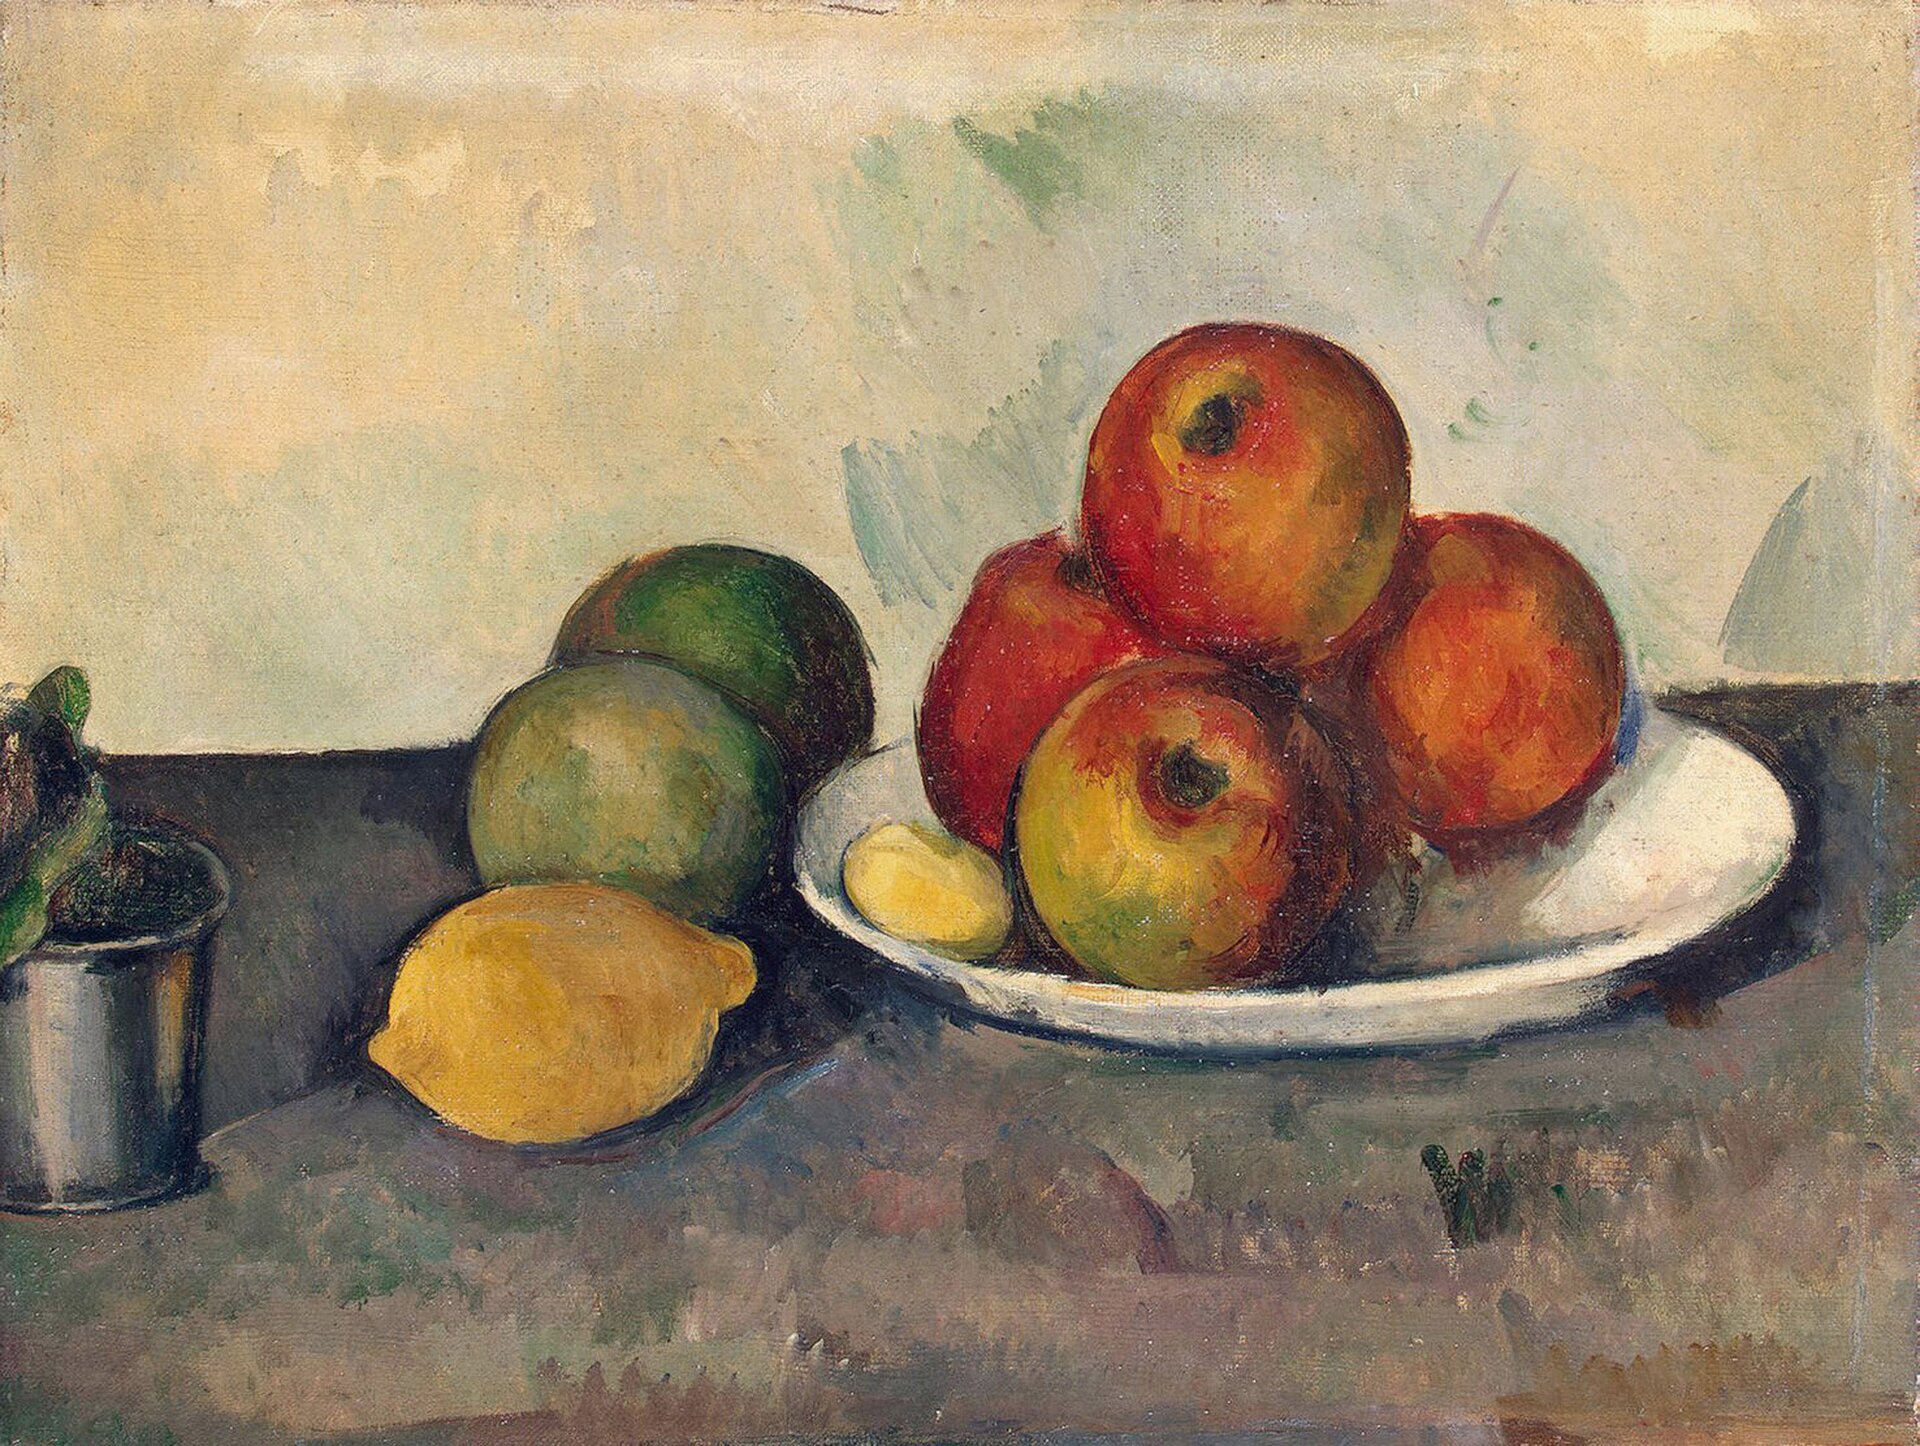 Ilustracja przedstawia obraz olejny „Martwa natura z jabłkami”, autorstwa Paula Cézannea. W centrum kompozycji znajdują się ułożone na białym talerzyku, czerwone jabłka. Obok, na swobodnie malowanym, niebiesko‑beżowo‑zielonym blacie stołu leżą dwa zielone owoce i żółta cytryna. Po lewej stronie kadru namalowany został fragment metalowej doniczki z kwiatem o zwiędniętych, ciemno‑zielonych liściach. Martwa natura ustawiona jest na tle jasnej, żółtawej ściany, na której artysta przy pomocy luźnych plam jasno‑zielonego, chłodnego koloru namalował cienie. Artysta nie skupia się na wiernym odzwierciedleniu martwej natury. Nie dba o szczegół. Obraz ma charakter notatki, gdzie twórca przy pomocy czystych kolorów i szybkich pociągnięć pędzla chce oddać swoje emocje związane z przedstawianą naturą. Kompozycja utrzymana jest w szerokiej, ciepłej gamie barw z mocnym akcentem kolorystycznym czerwieni jabłek w centrum.